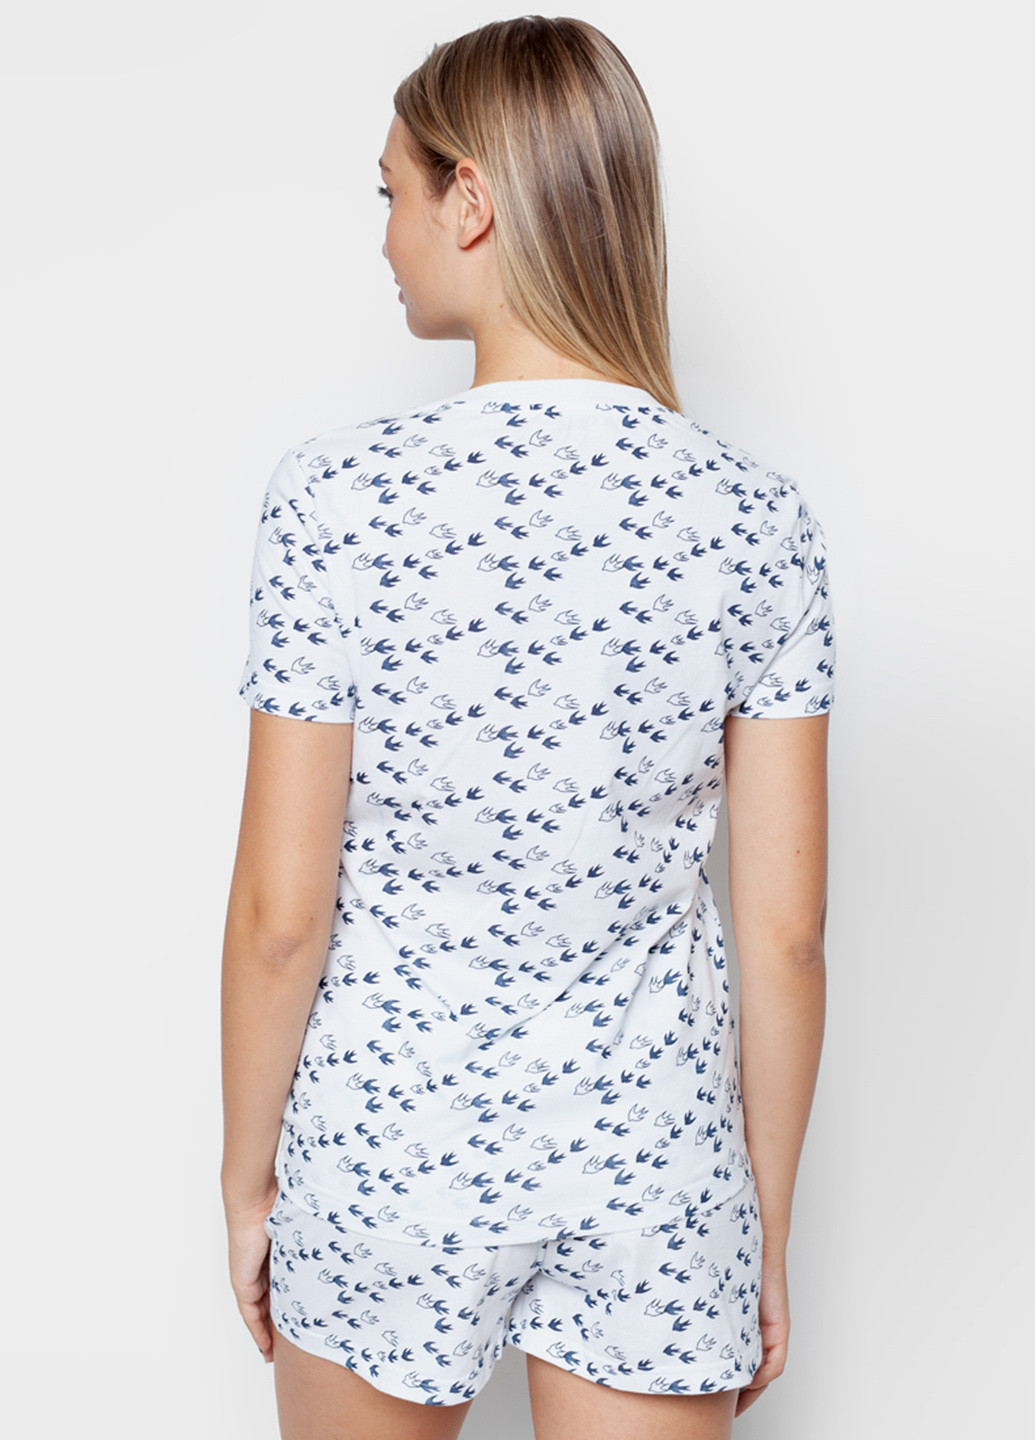 Голубая всесезон пижама (футболка, шорты) футболка + шорты Arber Woman